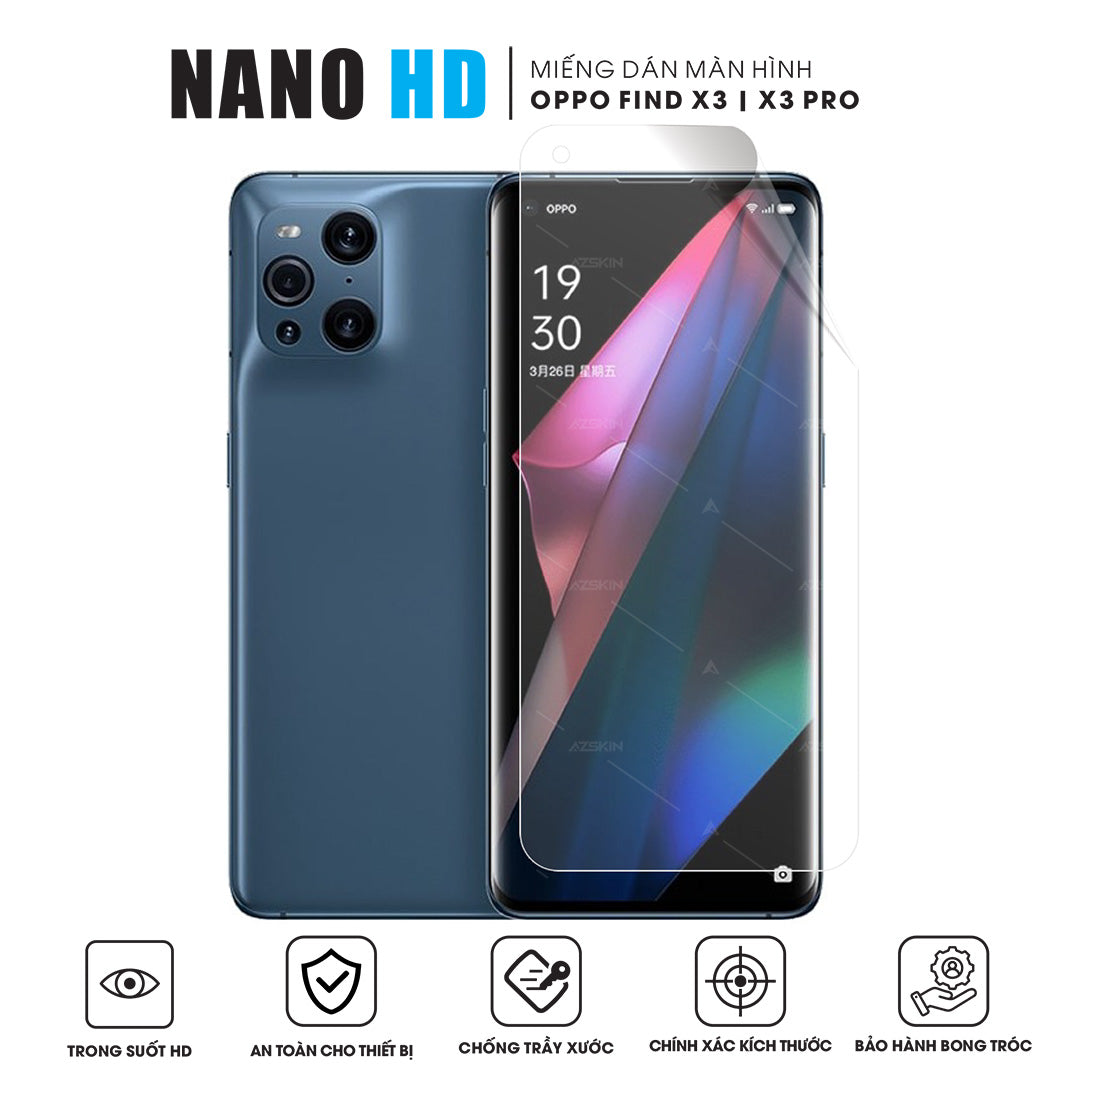 Miếng dán màn hình Nano HD OPPO Find X3